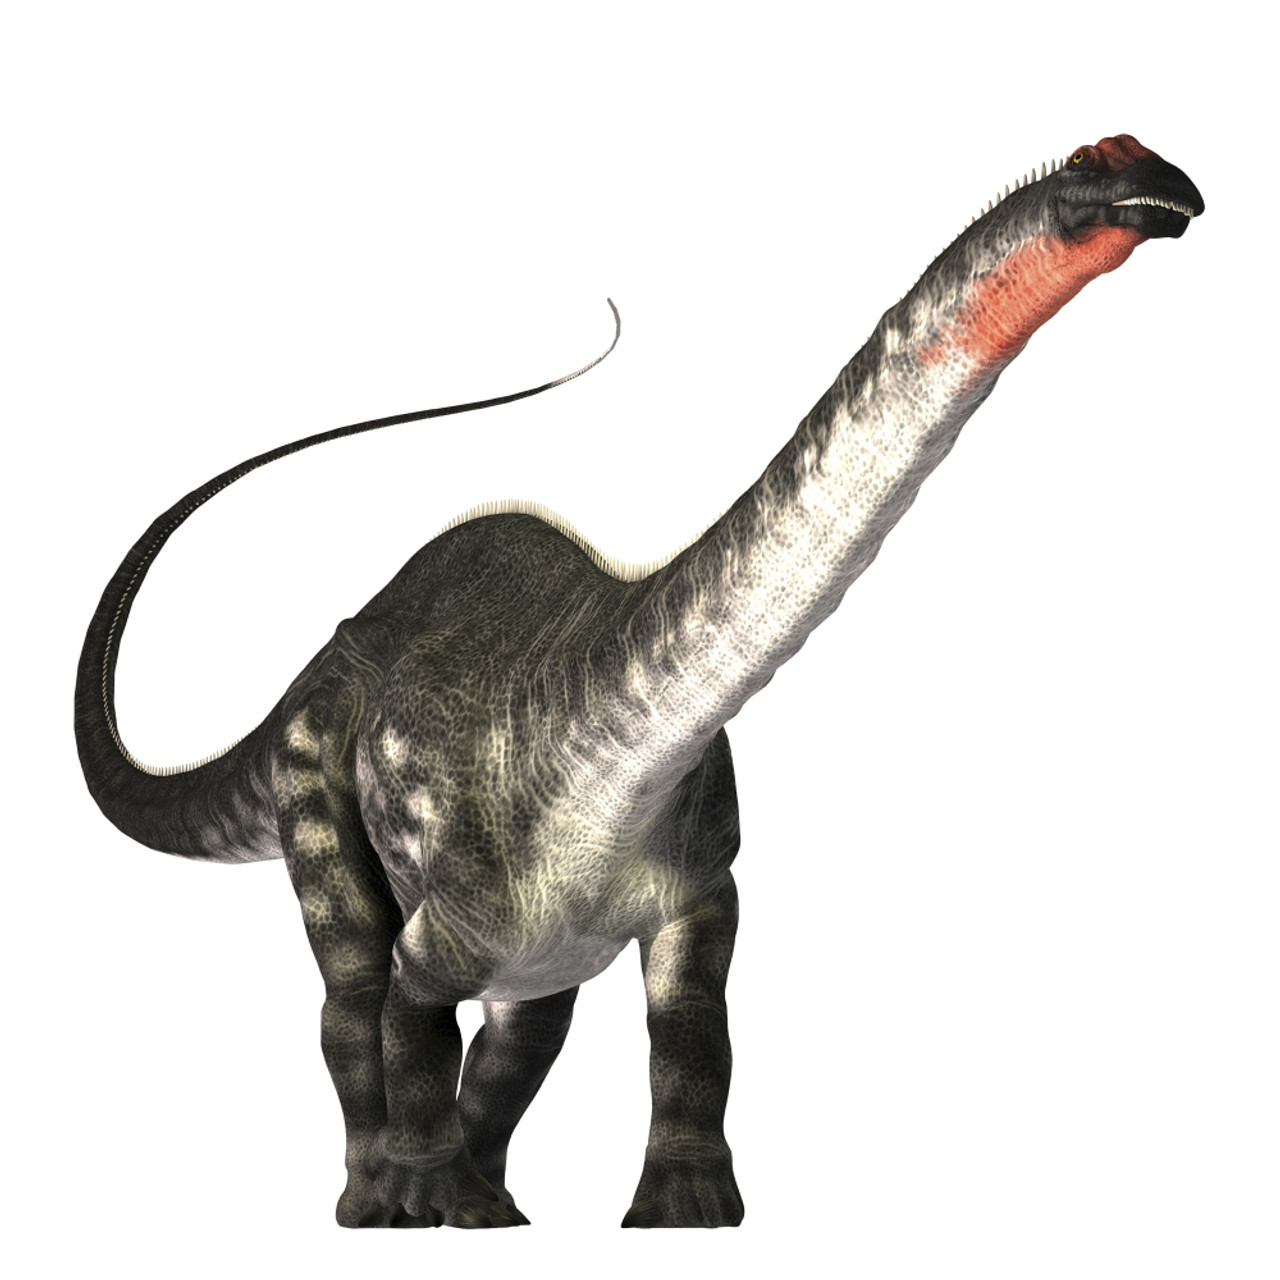 apatosaurus jurassic park